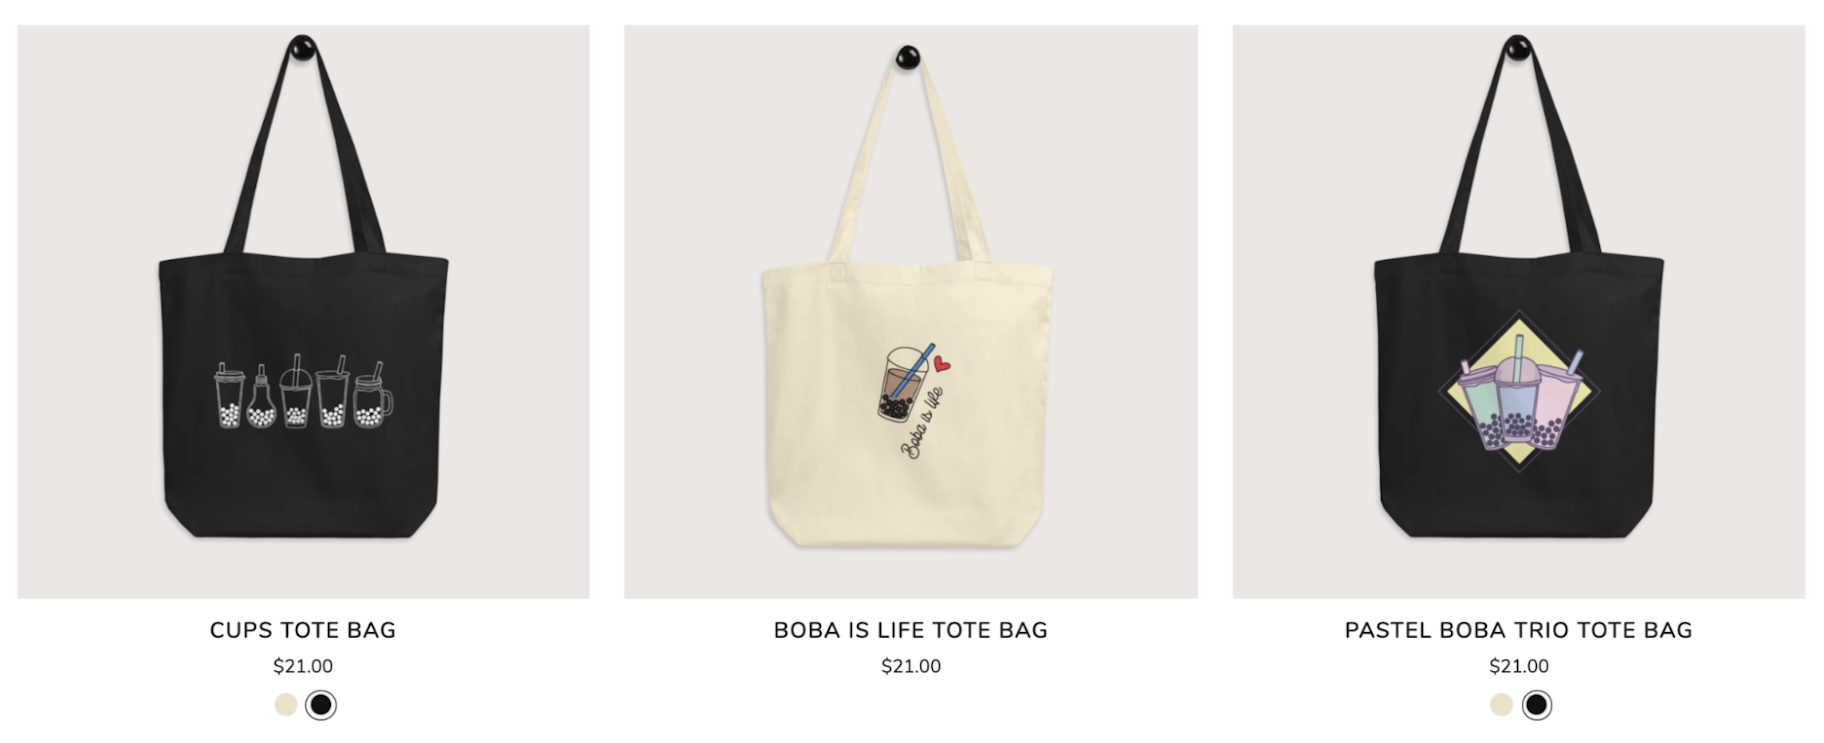 Bobalove: Tote Bags